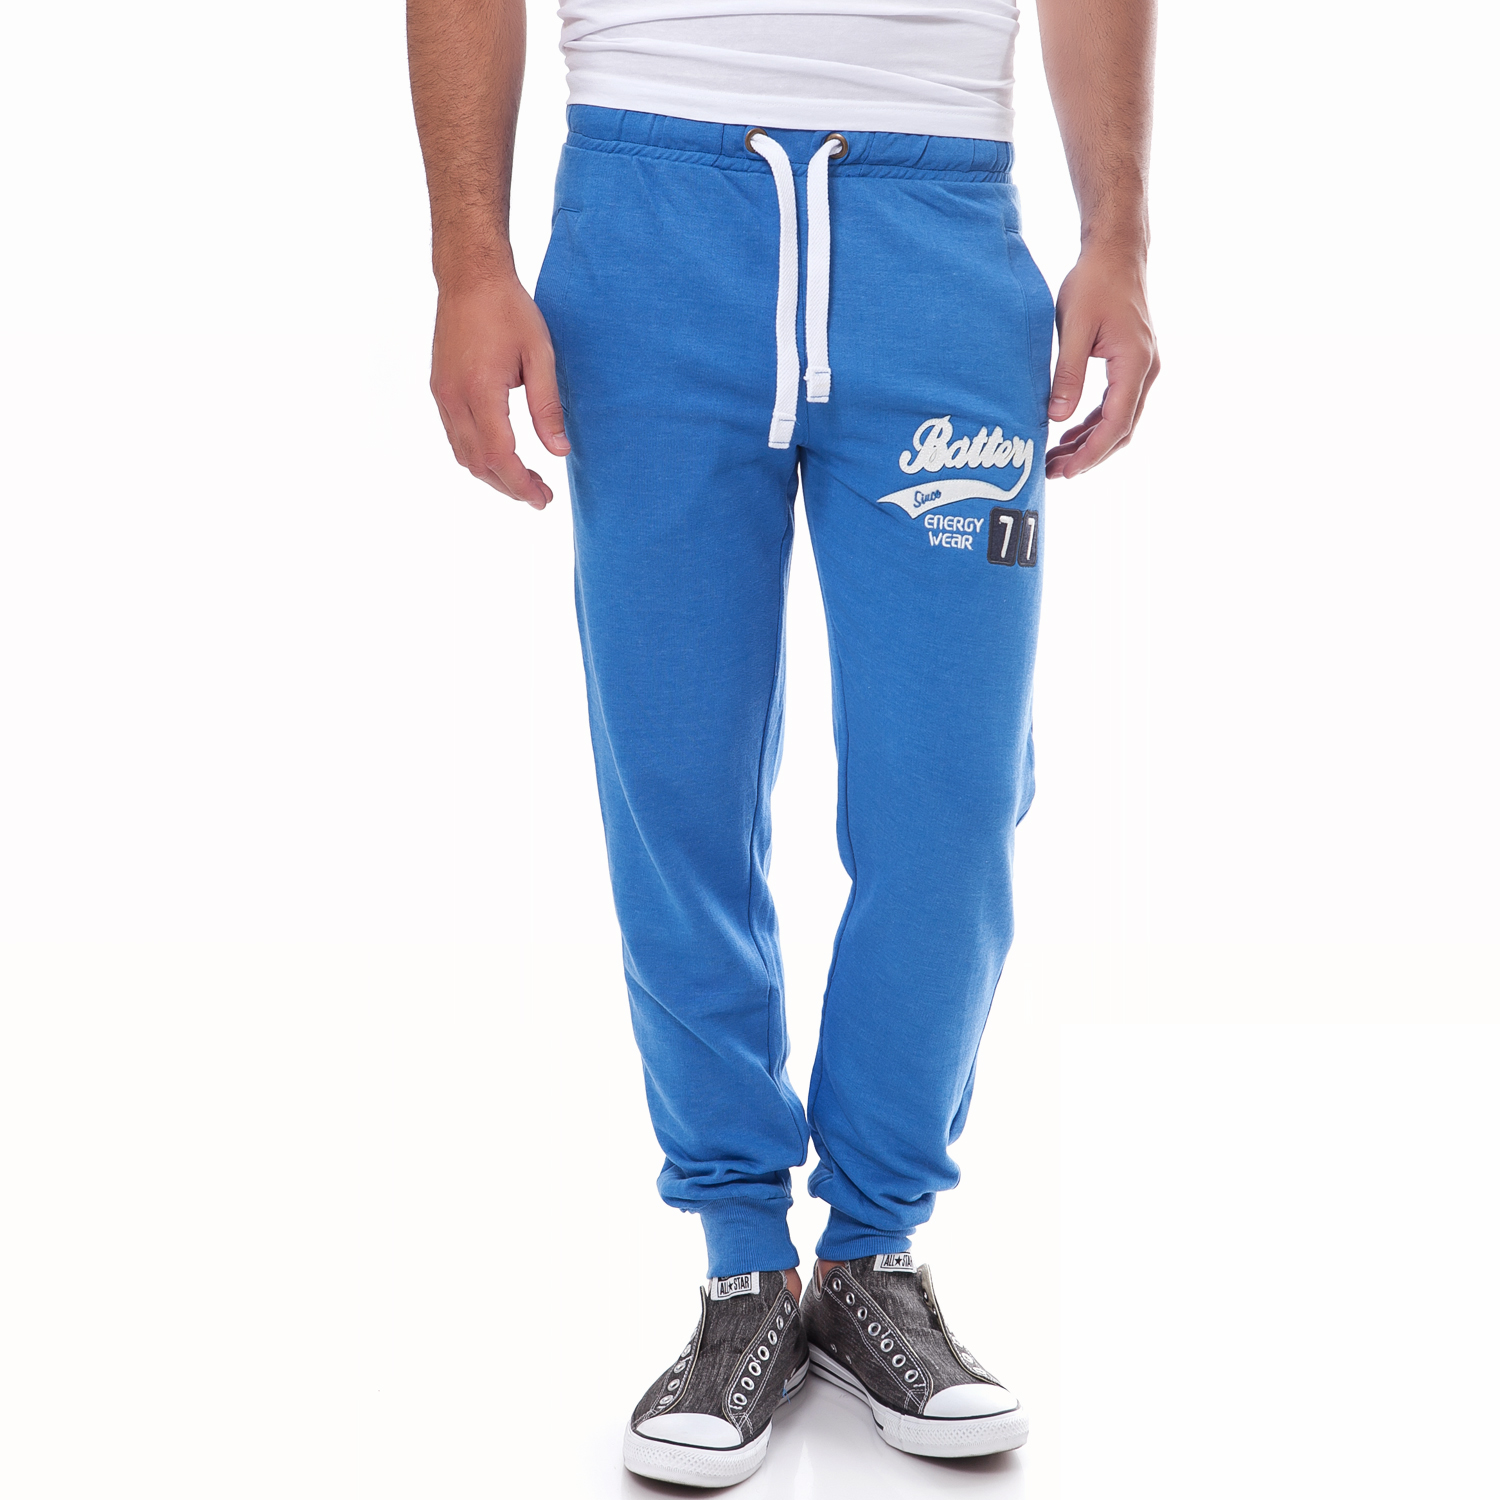 Ανδρικά/Ρούχα/Αθλητικά/Φόρμες BATTERY - Ανδρική φόρμα Battery μπλε